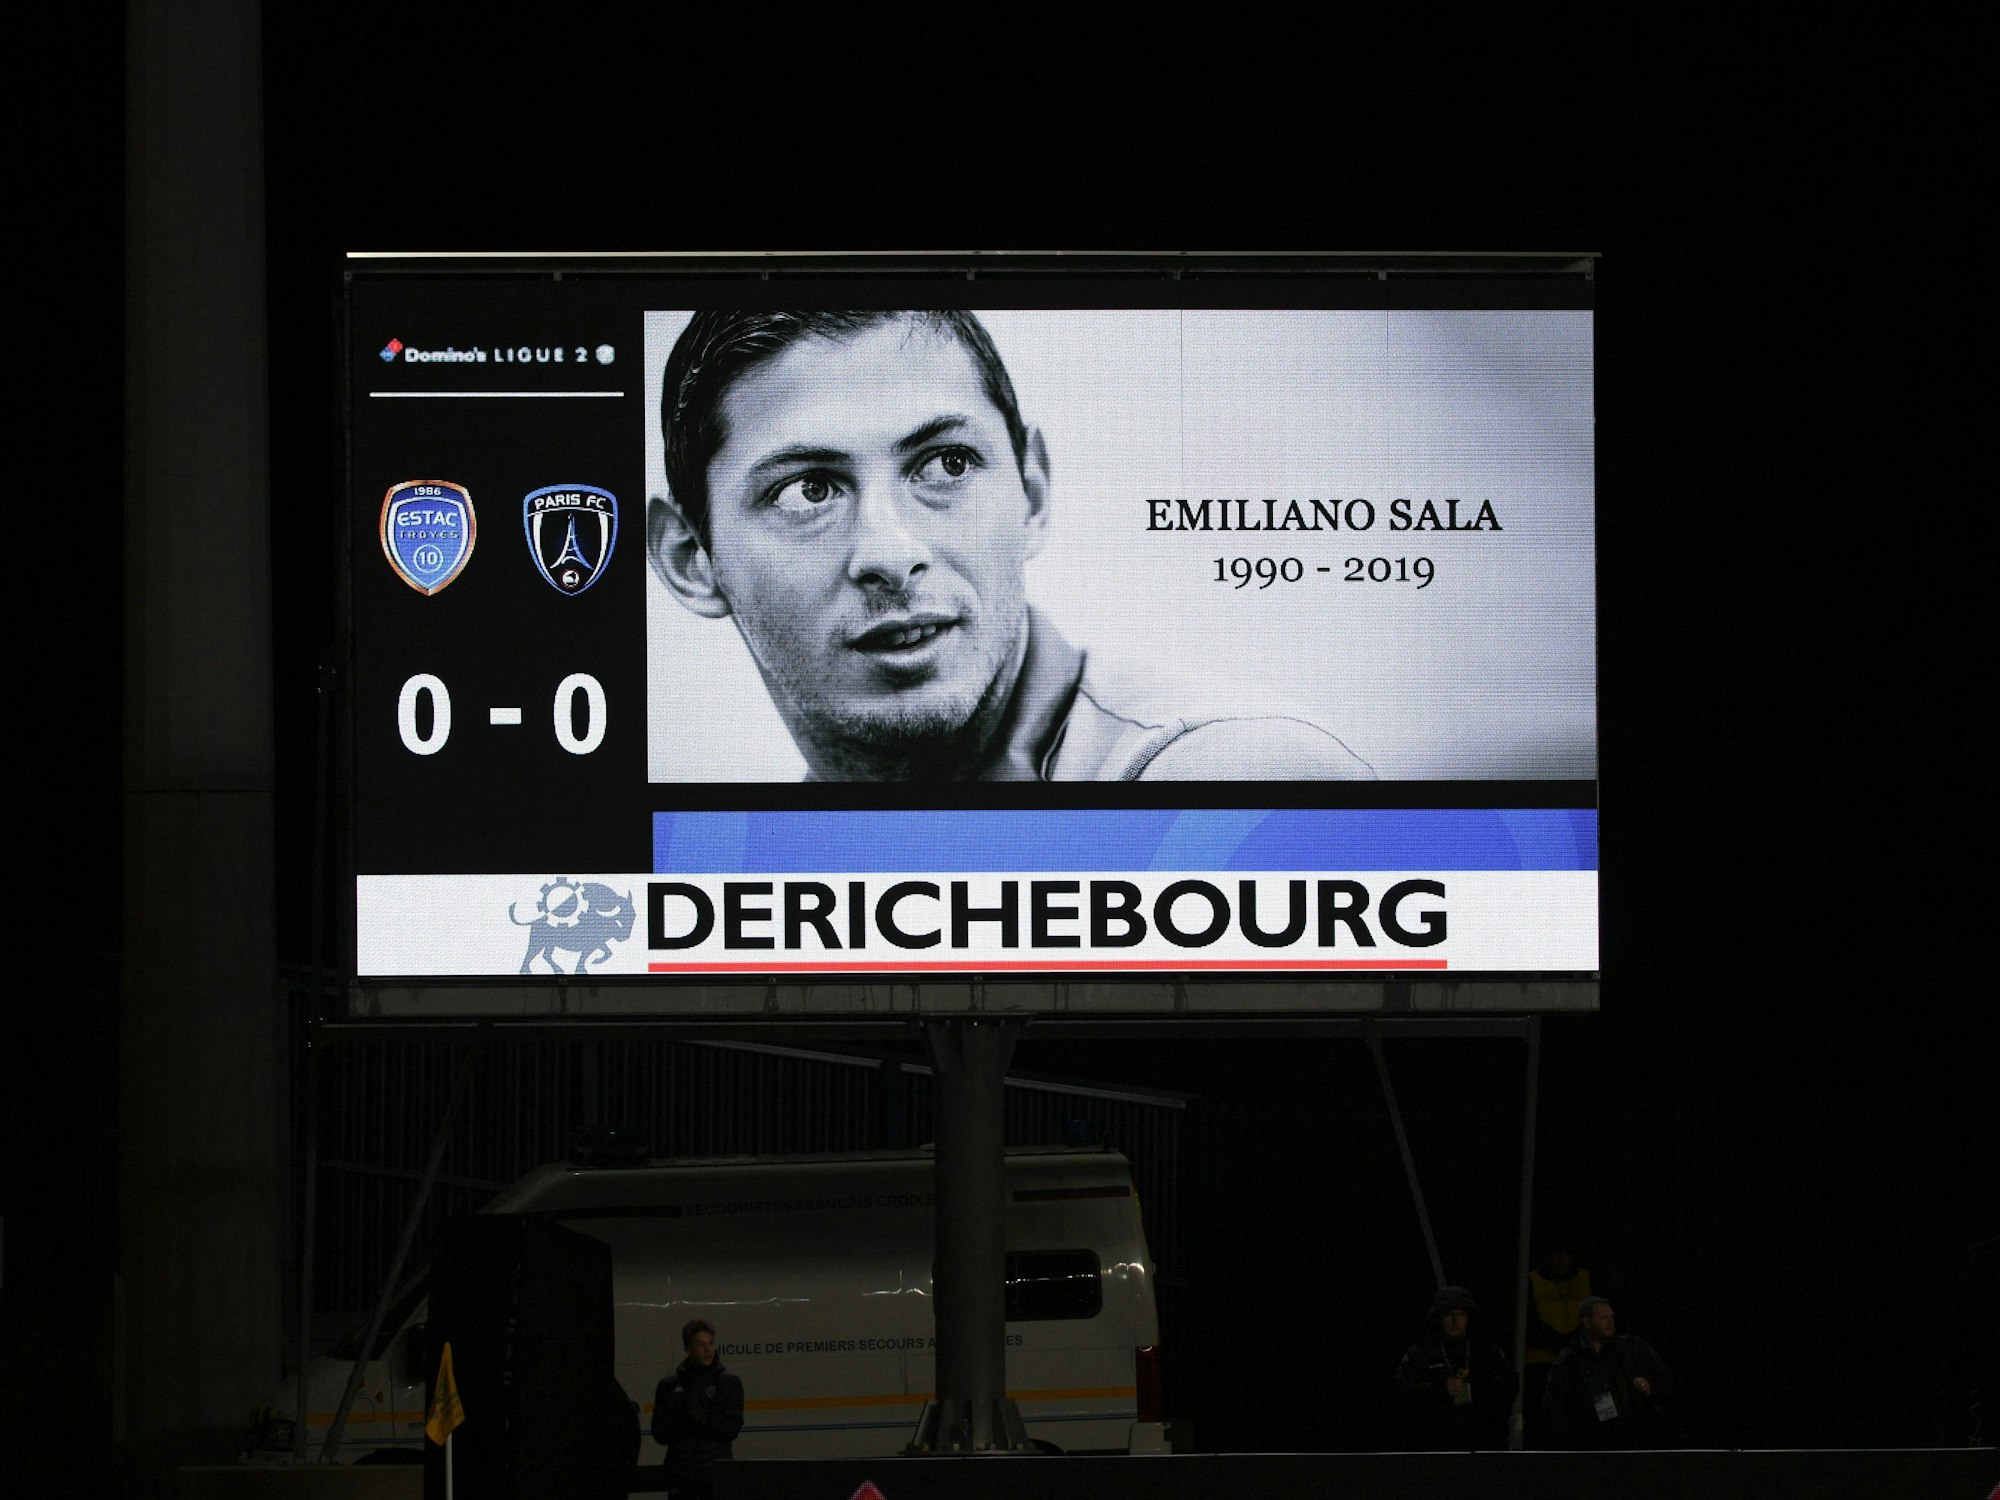 Bei einer Schweigeminute wird auf einer Anzeigetafel ein Bild von Emiliano Sala gezeigt.